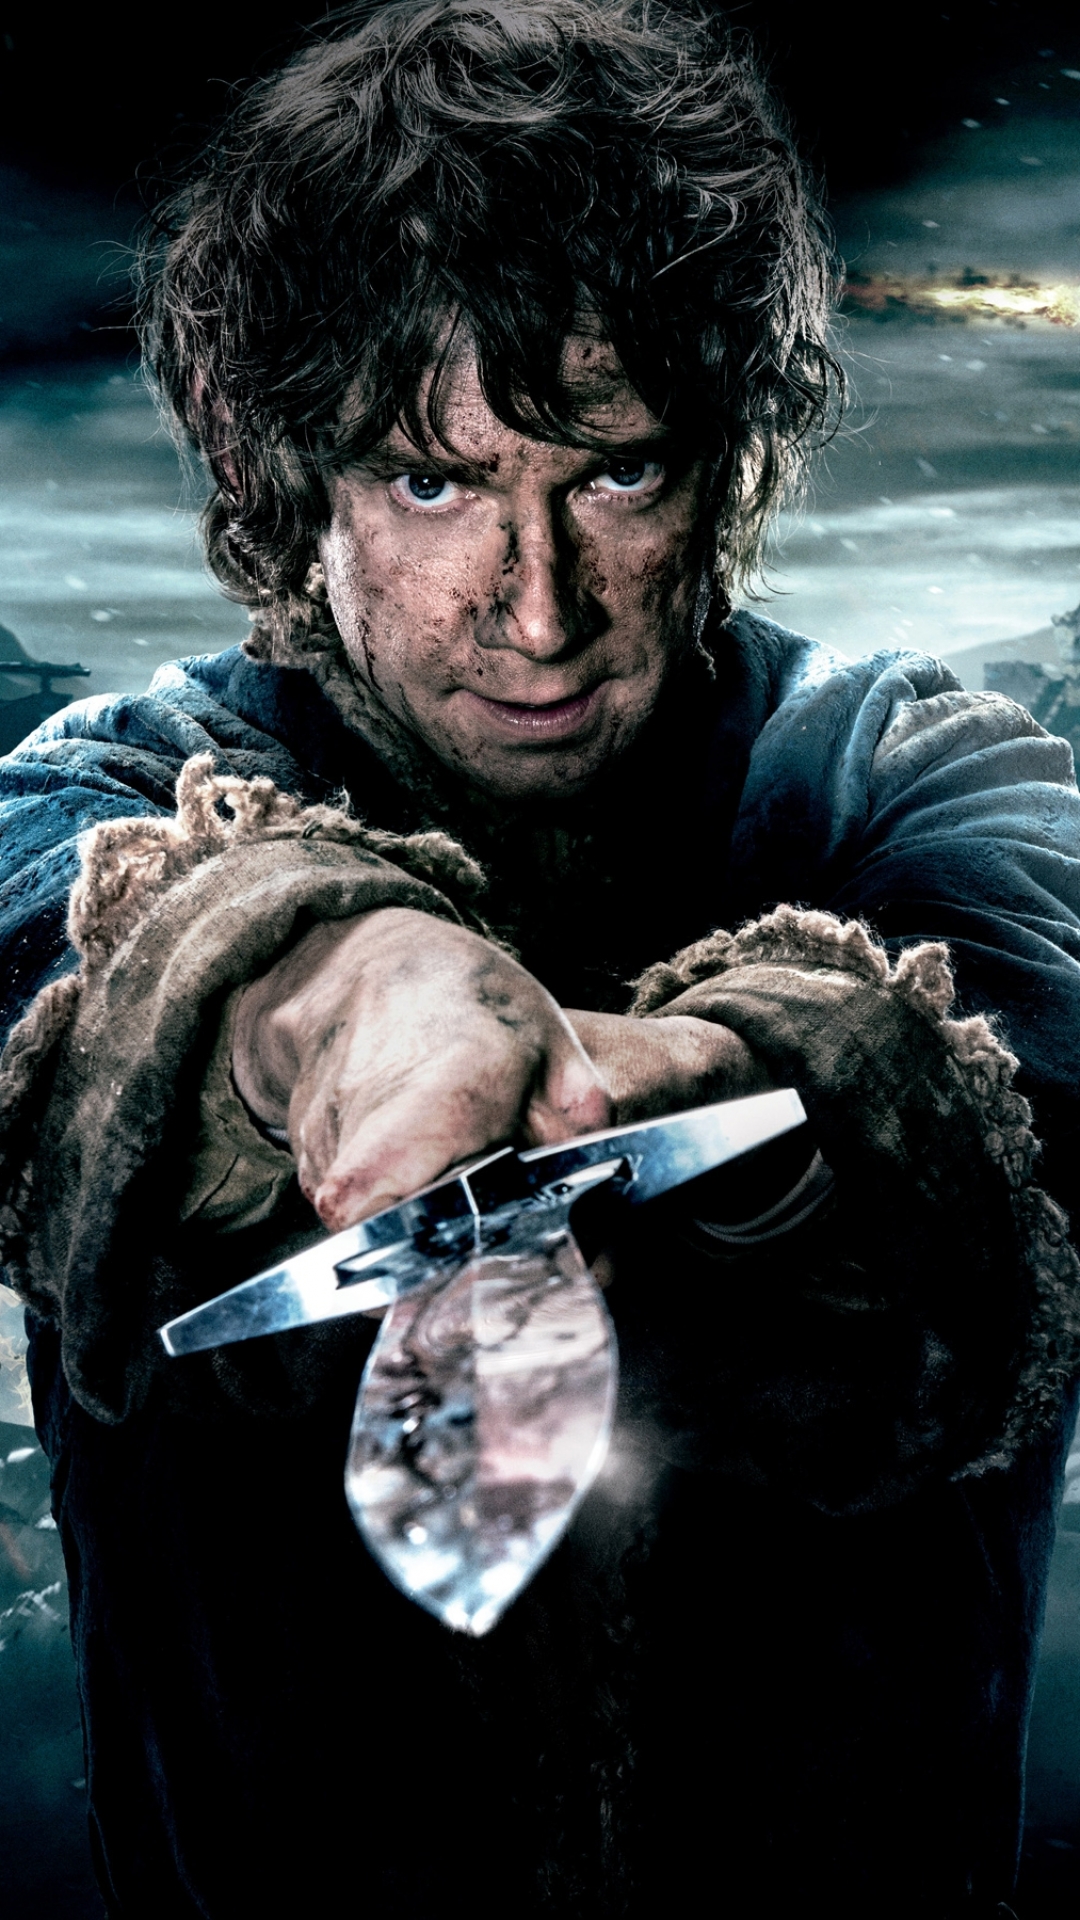 Descarga gratuita de fondo de pantalla para móvil de El Hobbit: La Batalla De Los Cinco Ejércitos, El Señor De Los Anillos, Películas.